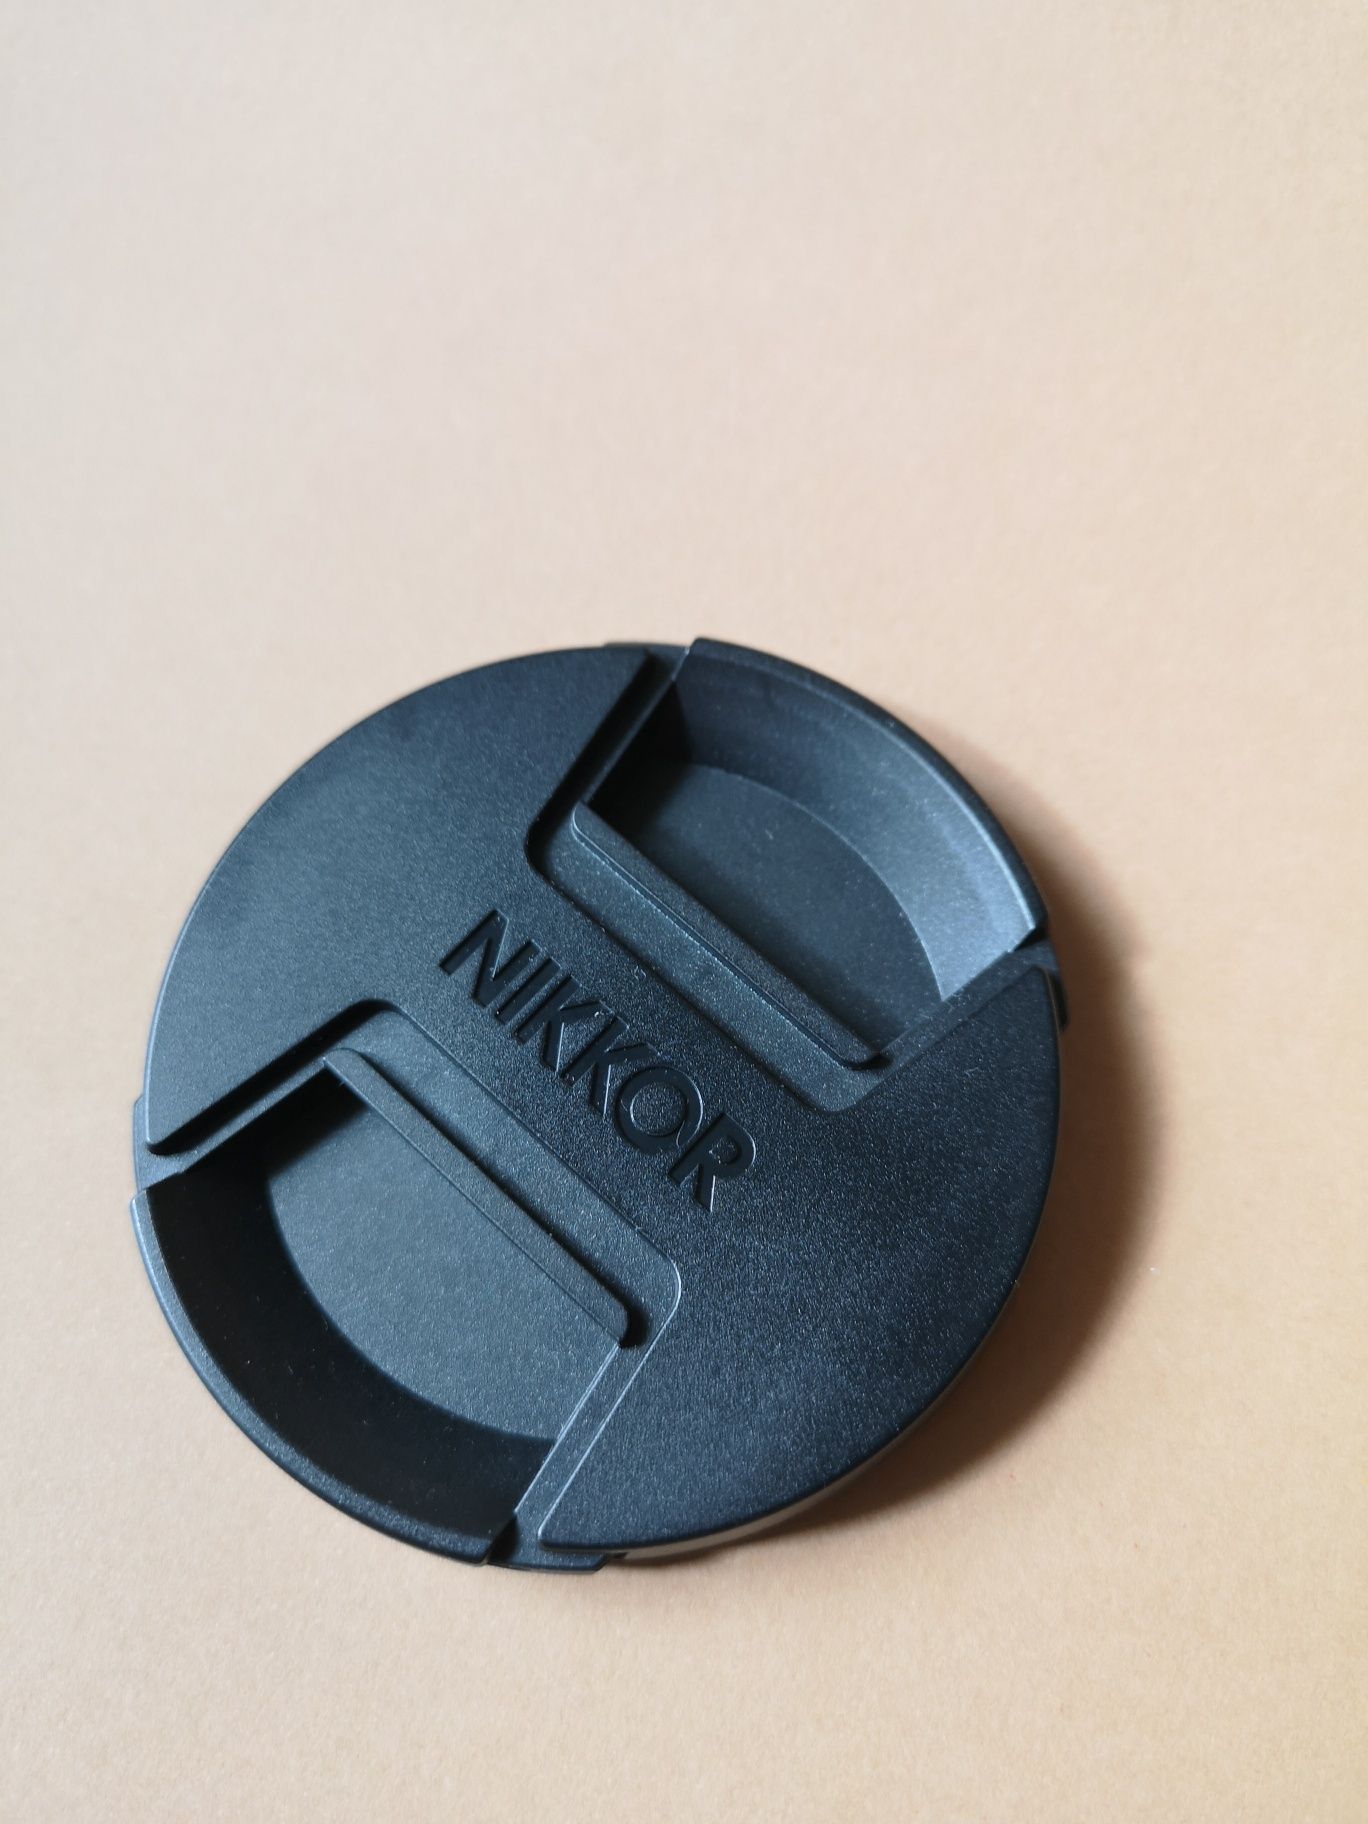 Nikkor/Nikon pokrywka obiektywu